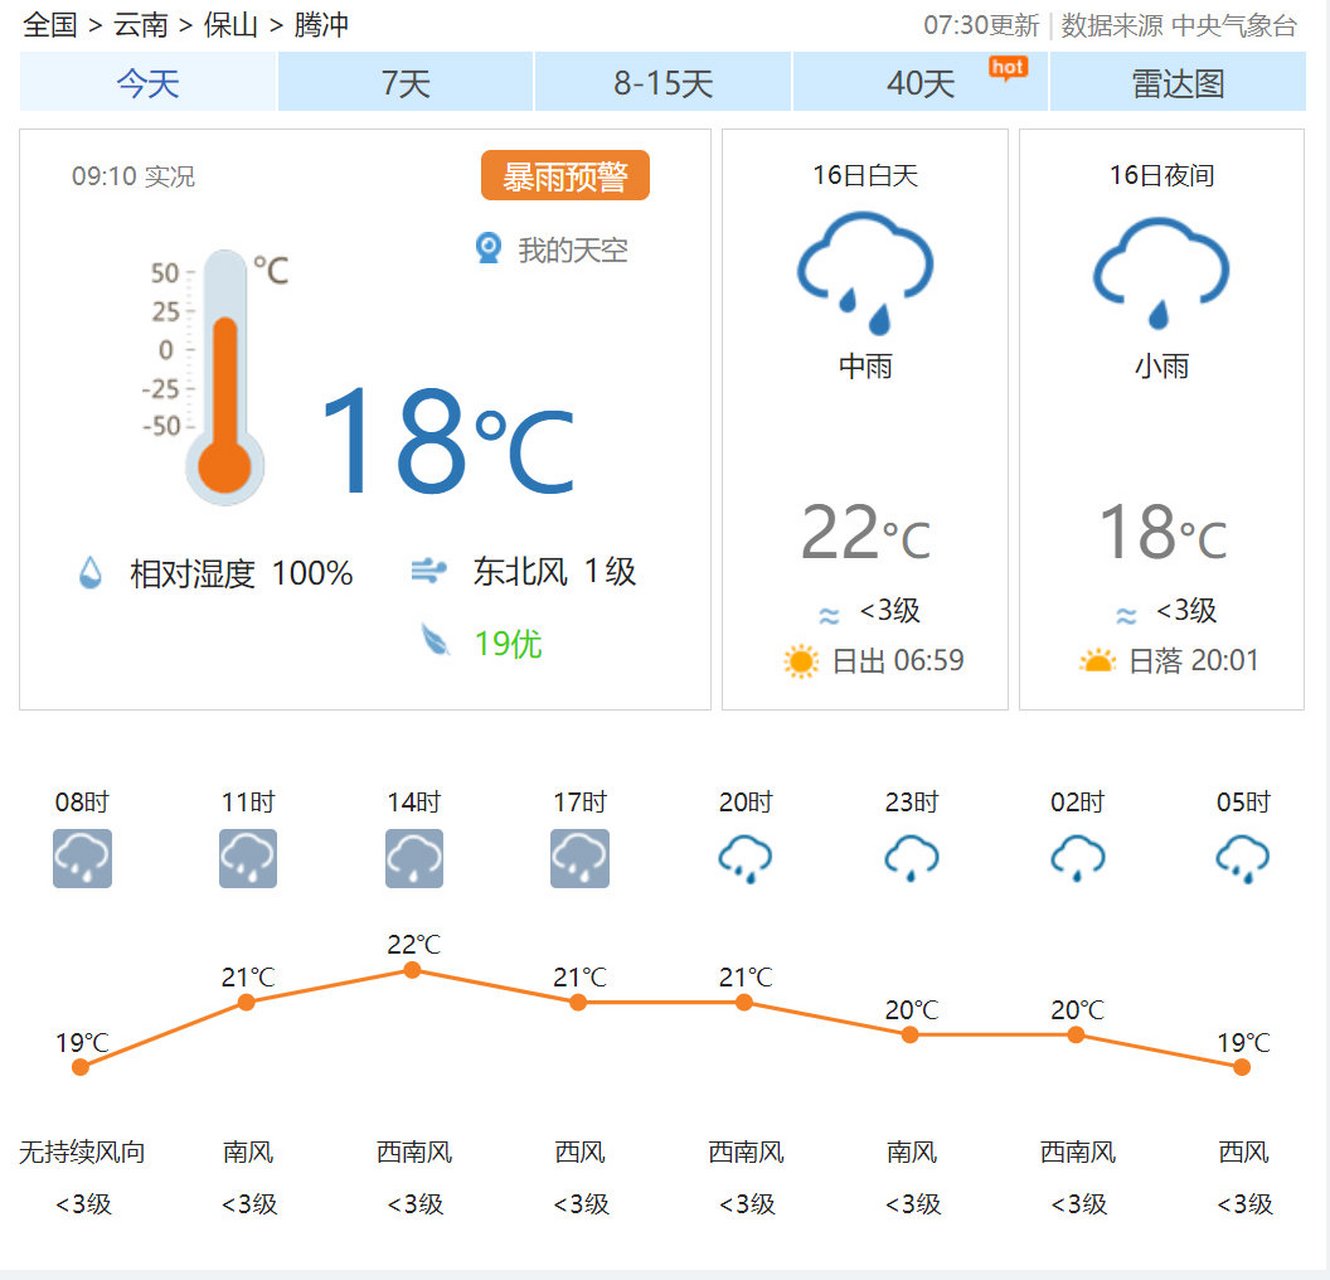 全国15天天气预报云南云南省天气预报